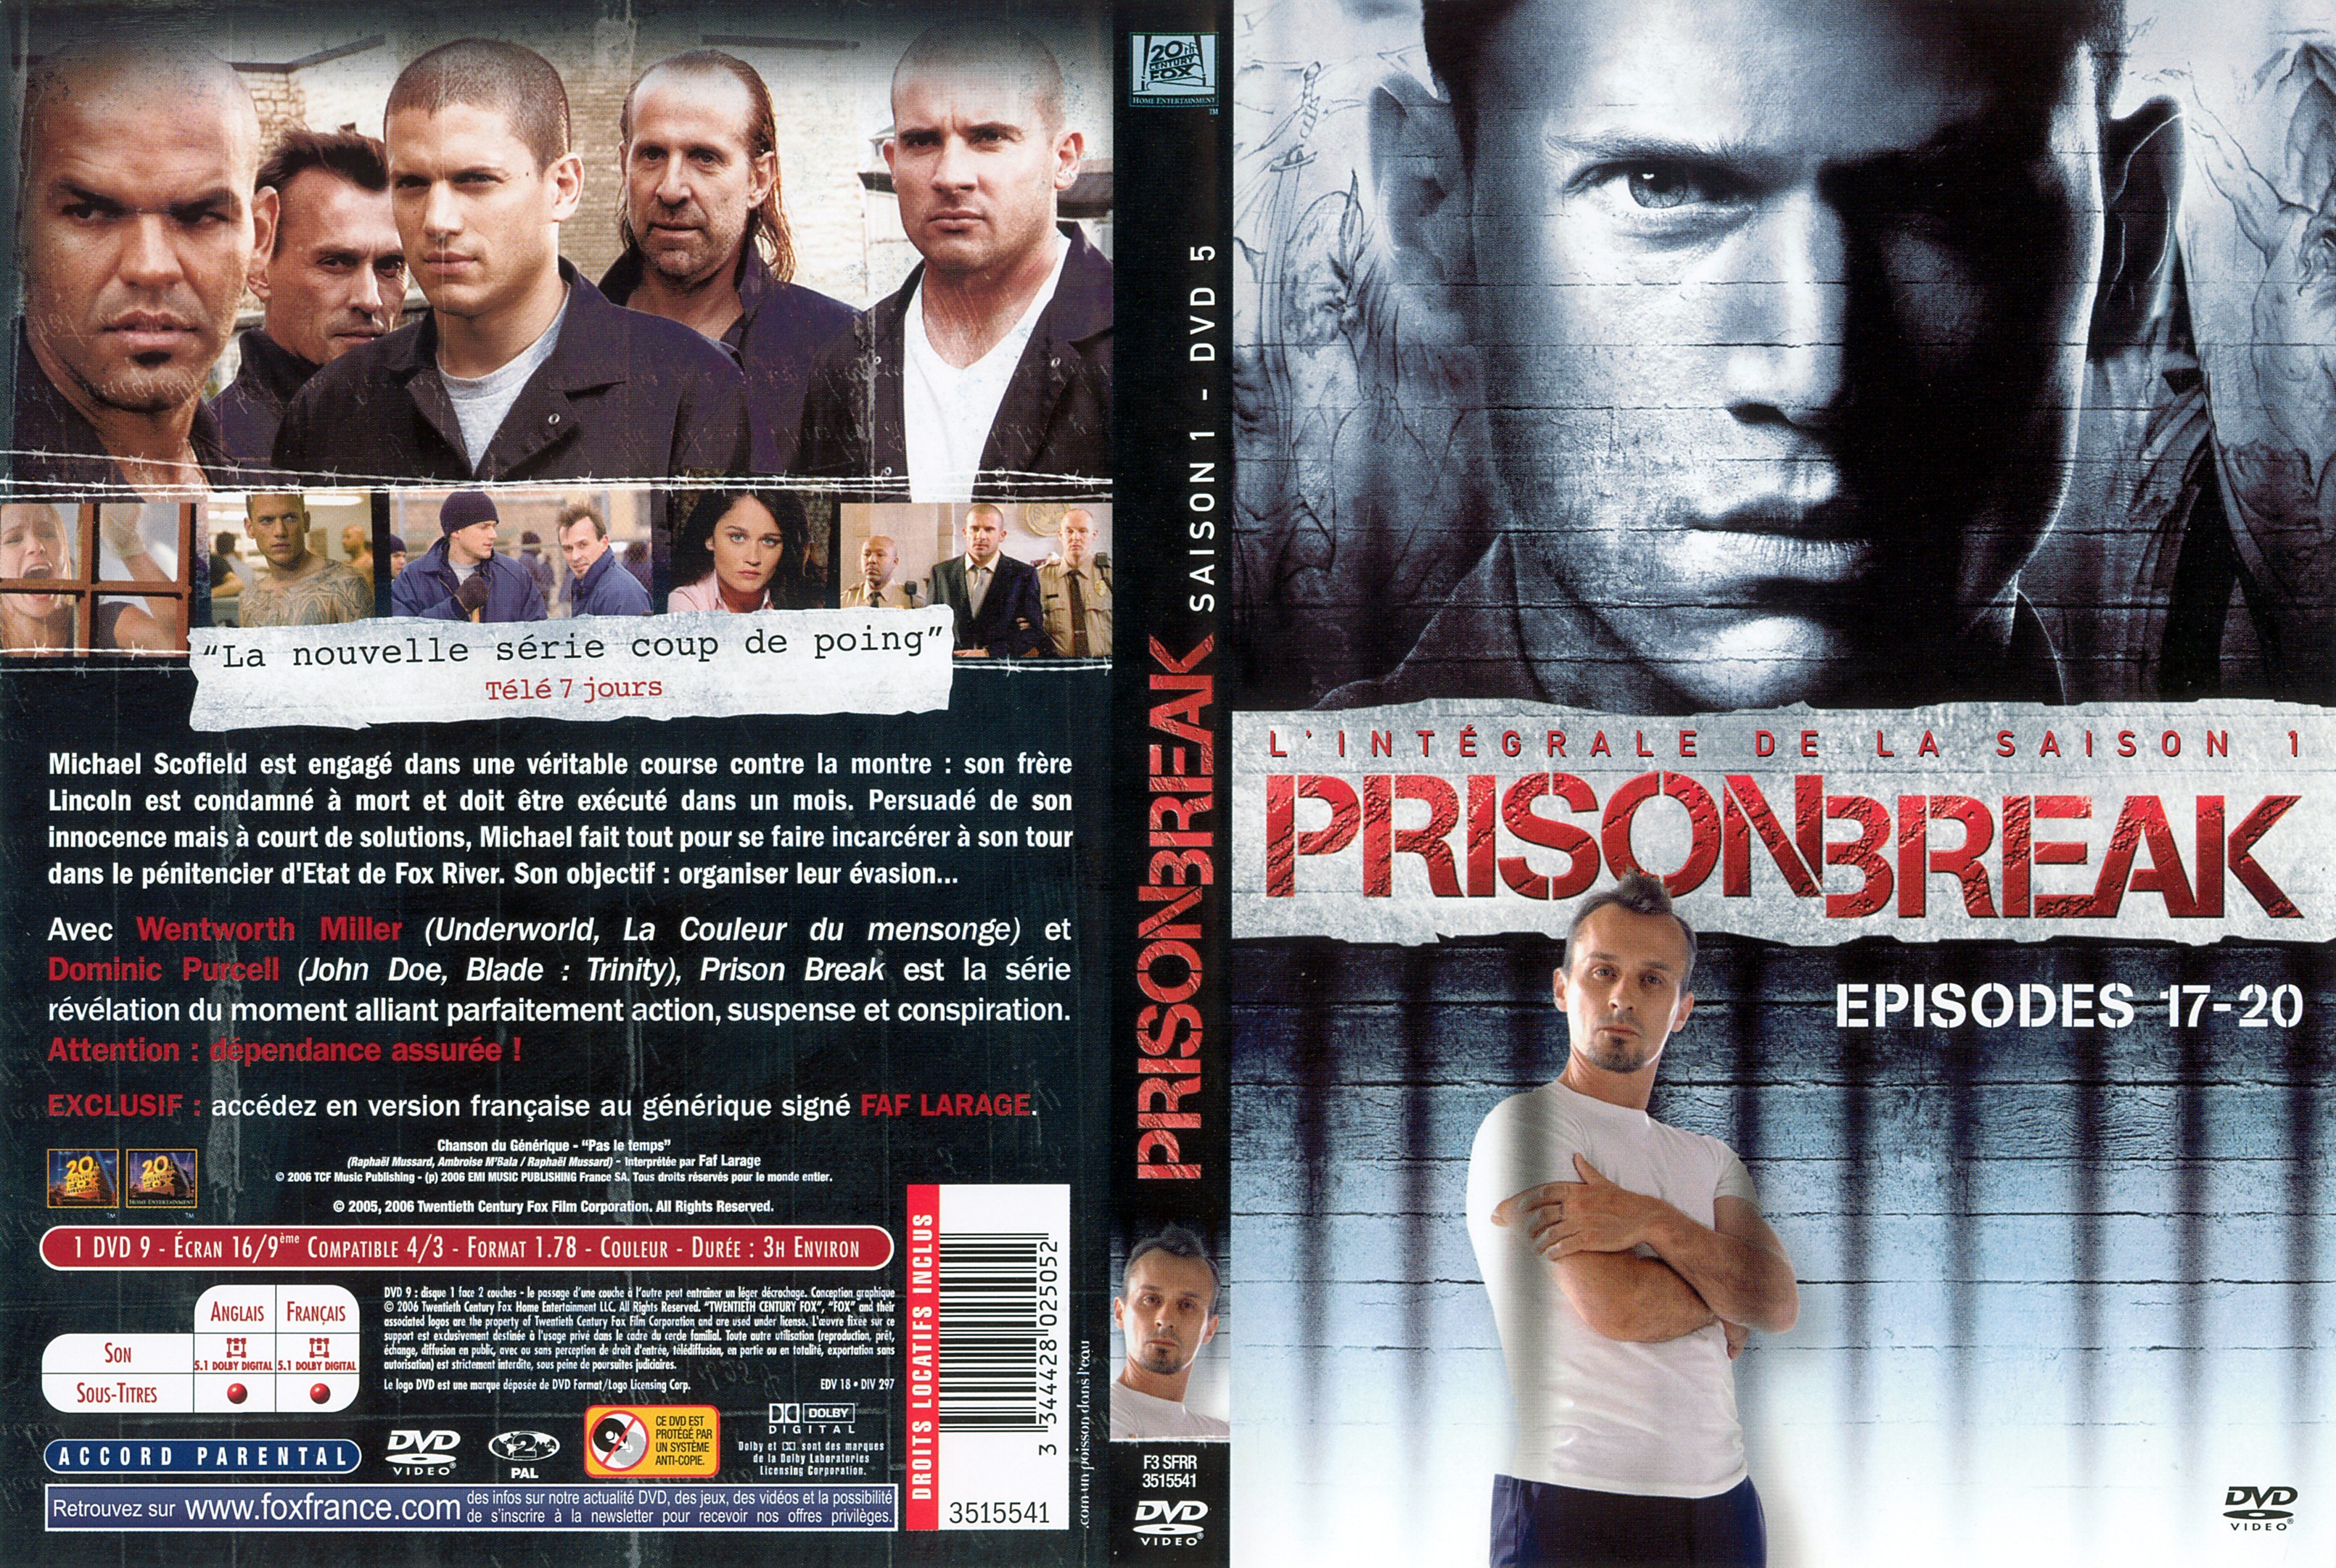 Jaquette DVD Prison break saison 1 dvd 5